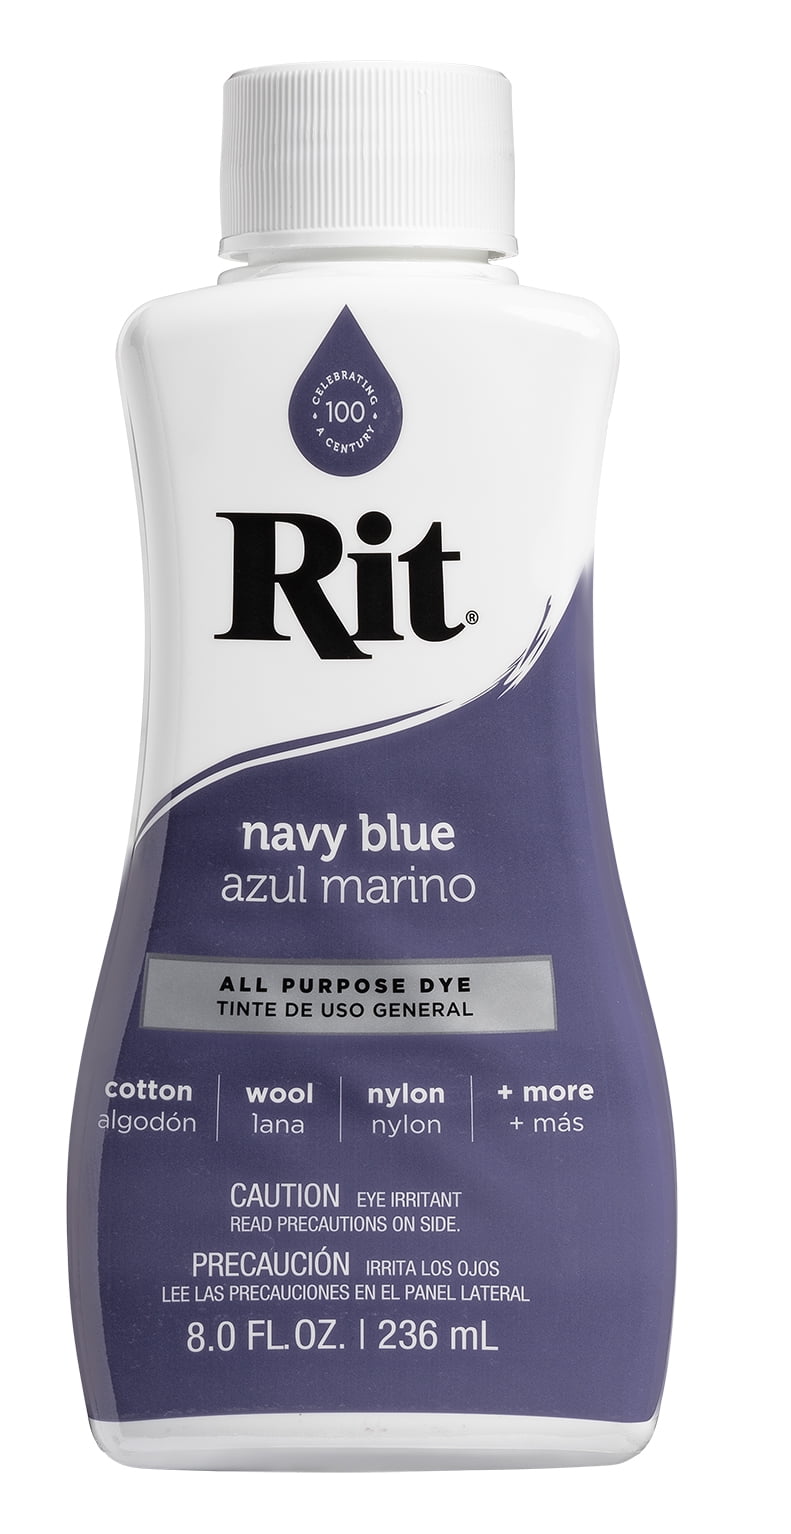 Denim Blue All-Purpose Dye – Rit Dye